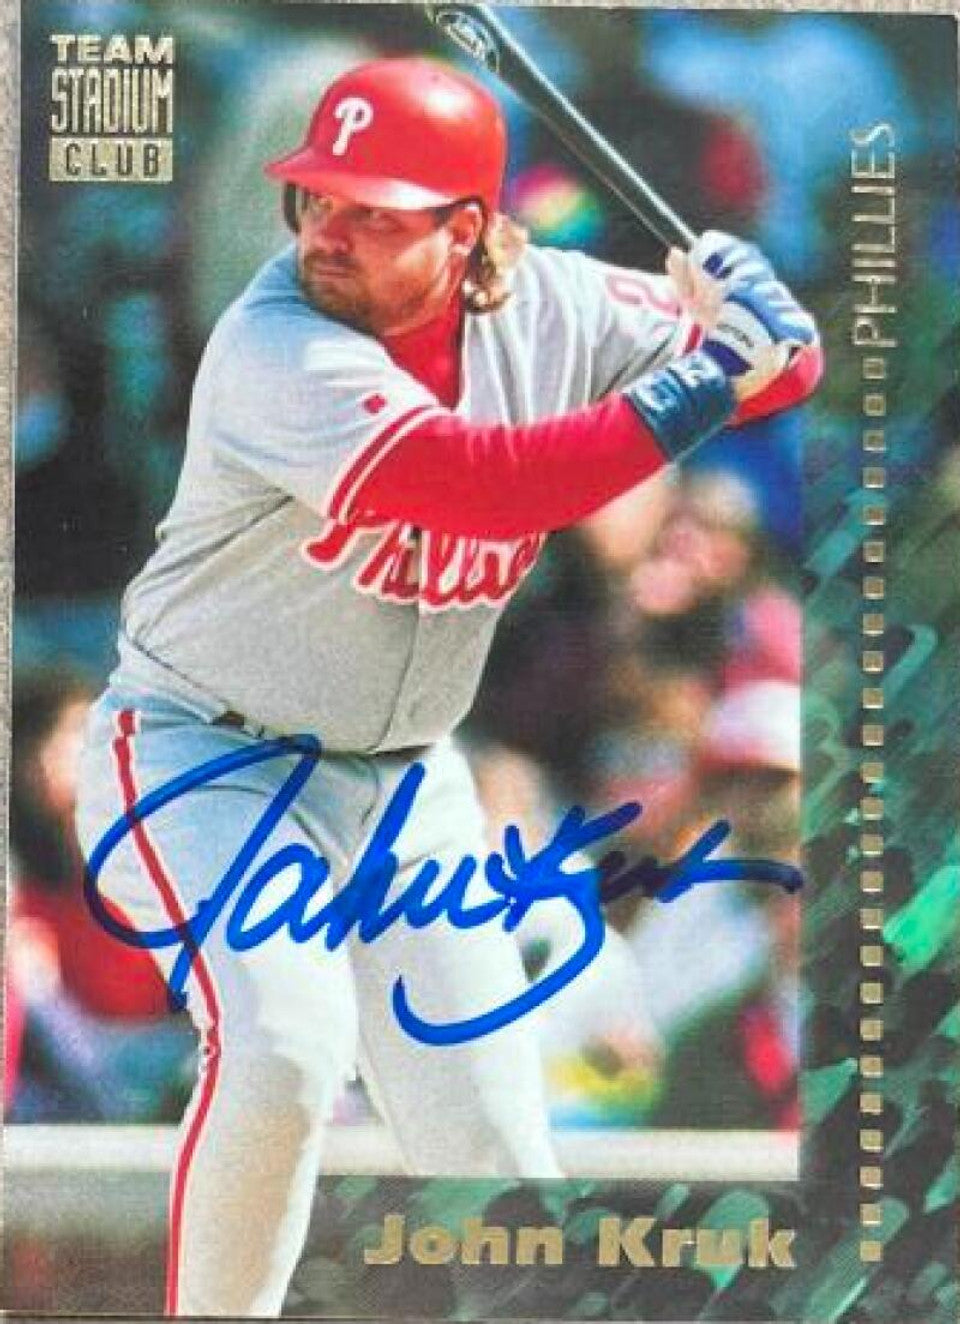 John Kruk Signed 1994 Stadium Club Team Baseball Card - Philadelphia Phillies